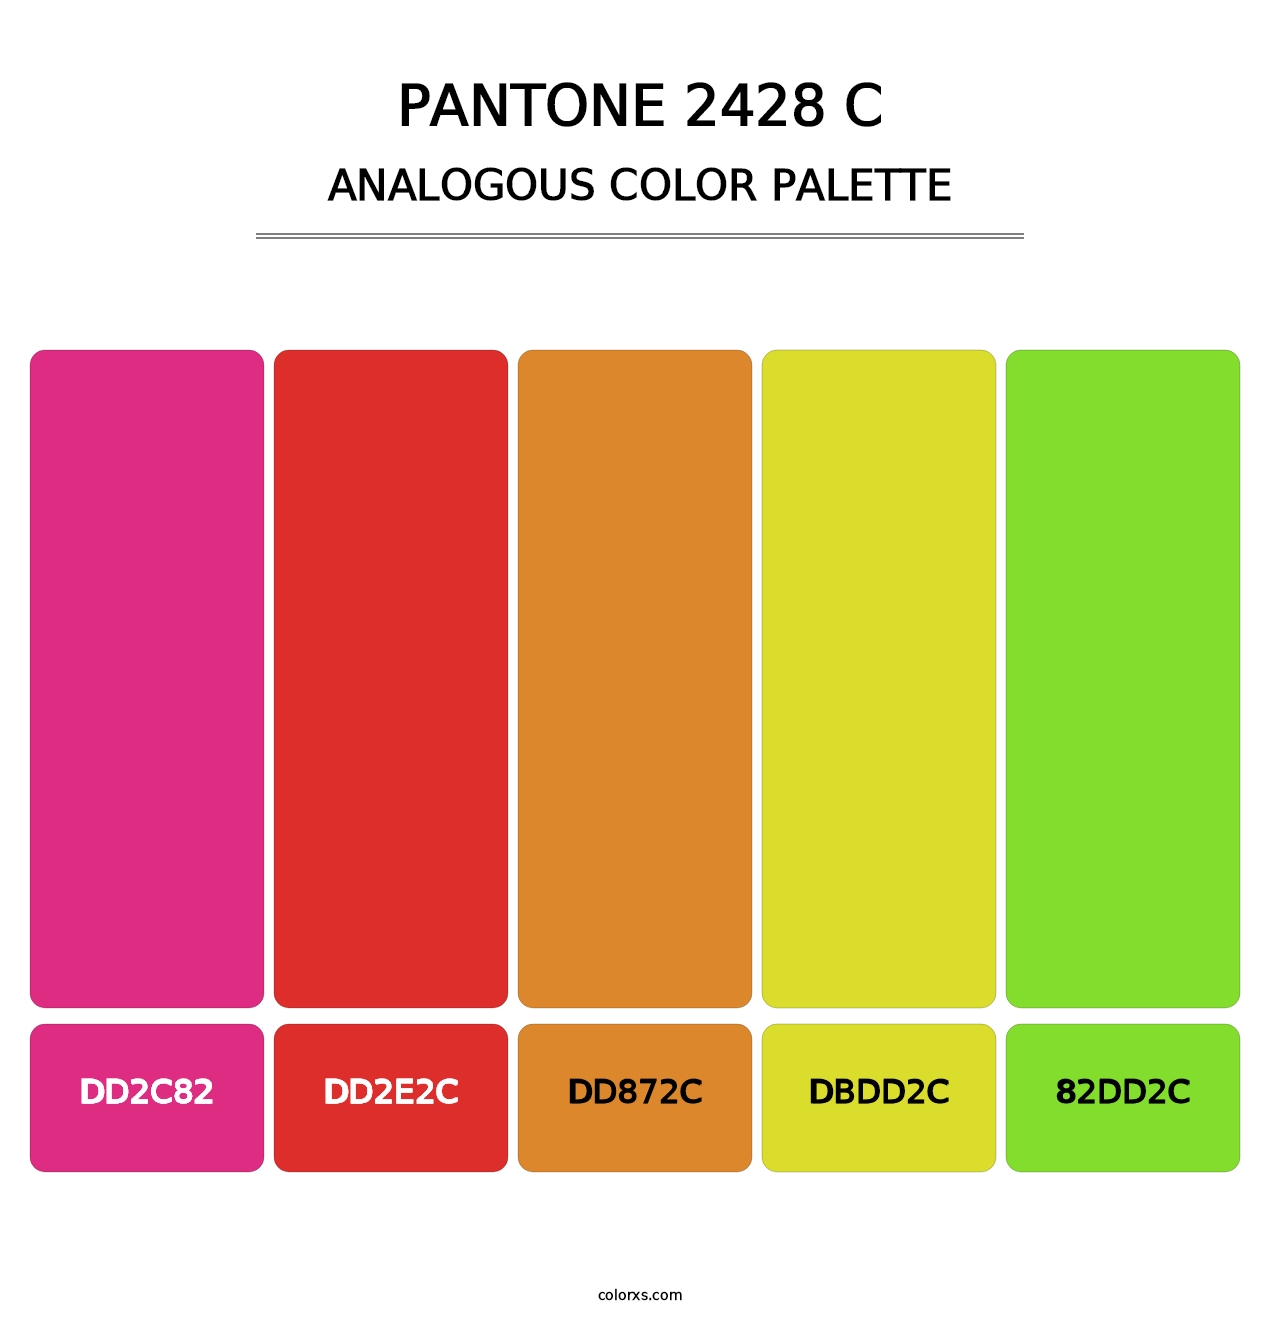 PANTONE 2428 C - Analogous Color Palette